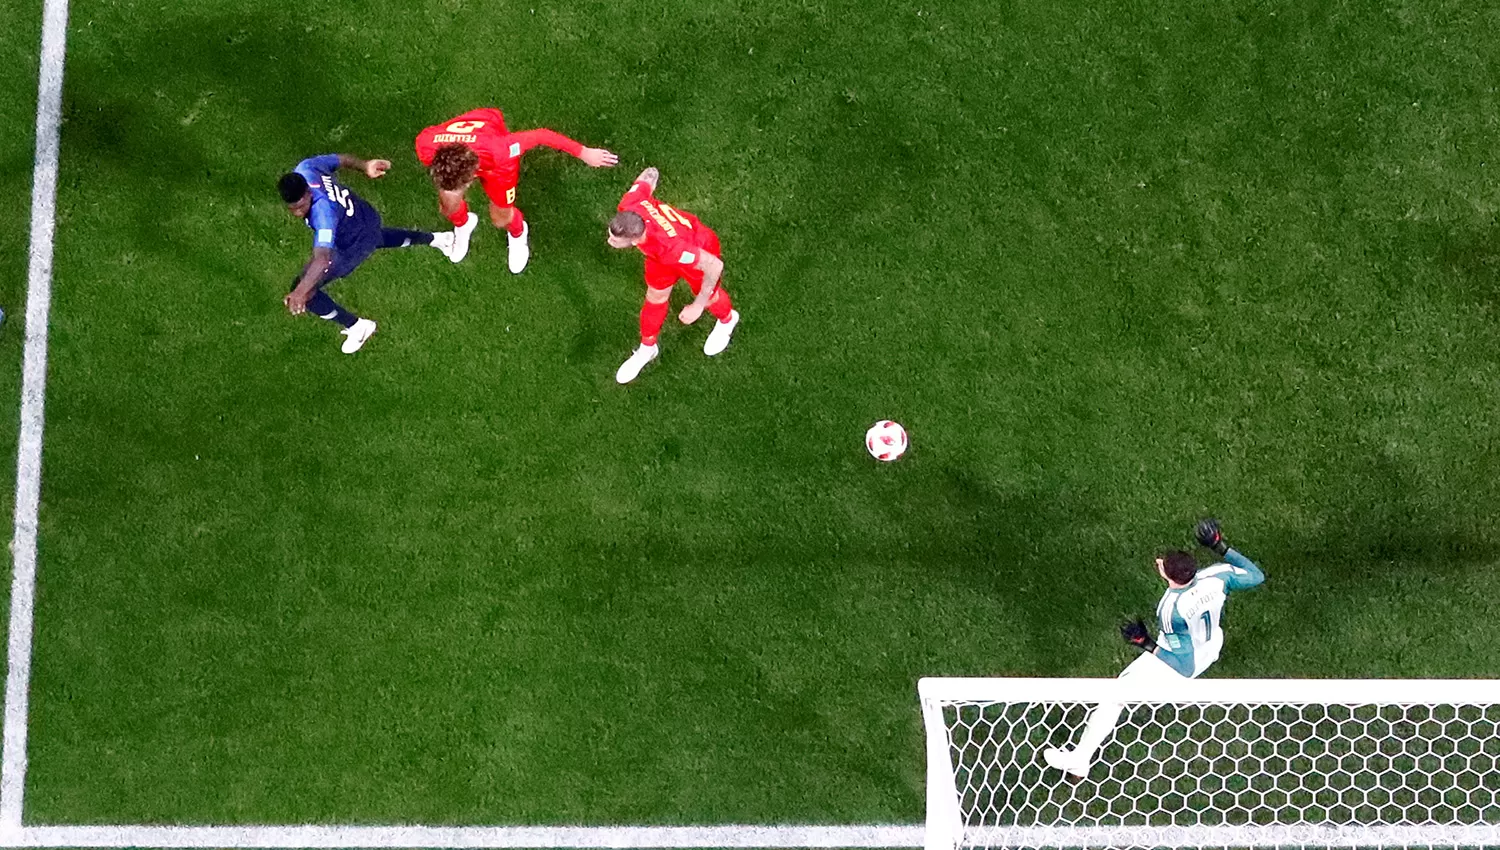 Con este gol de cabeza, Samuel Umtiti entró en la historia grande del fútbol galo.
REUTERS